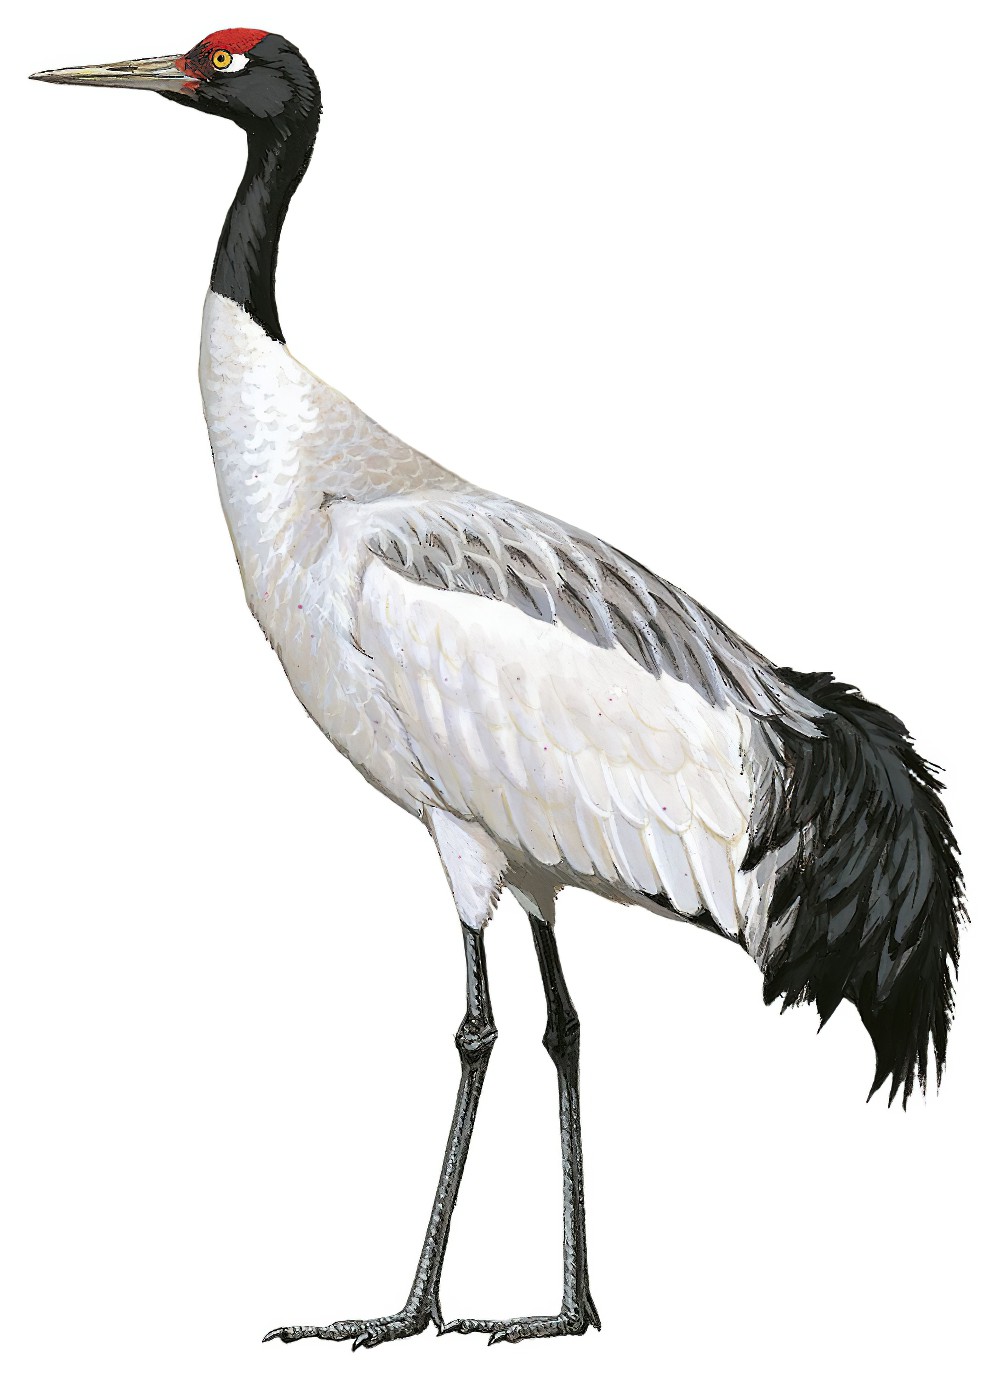 Black-necked Crane / Grus nigricollis